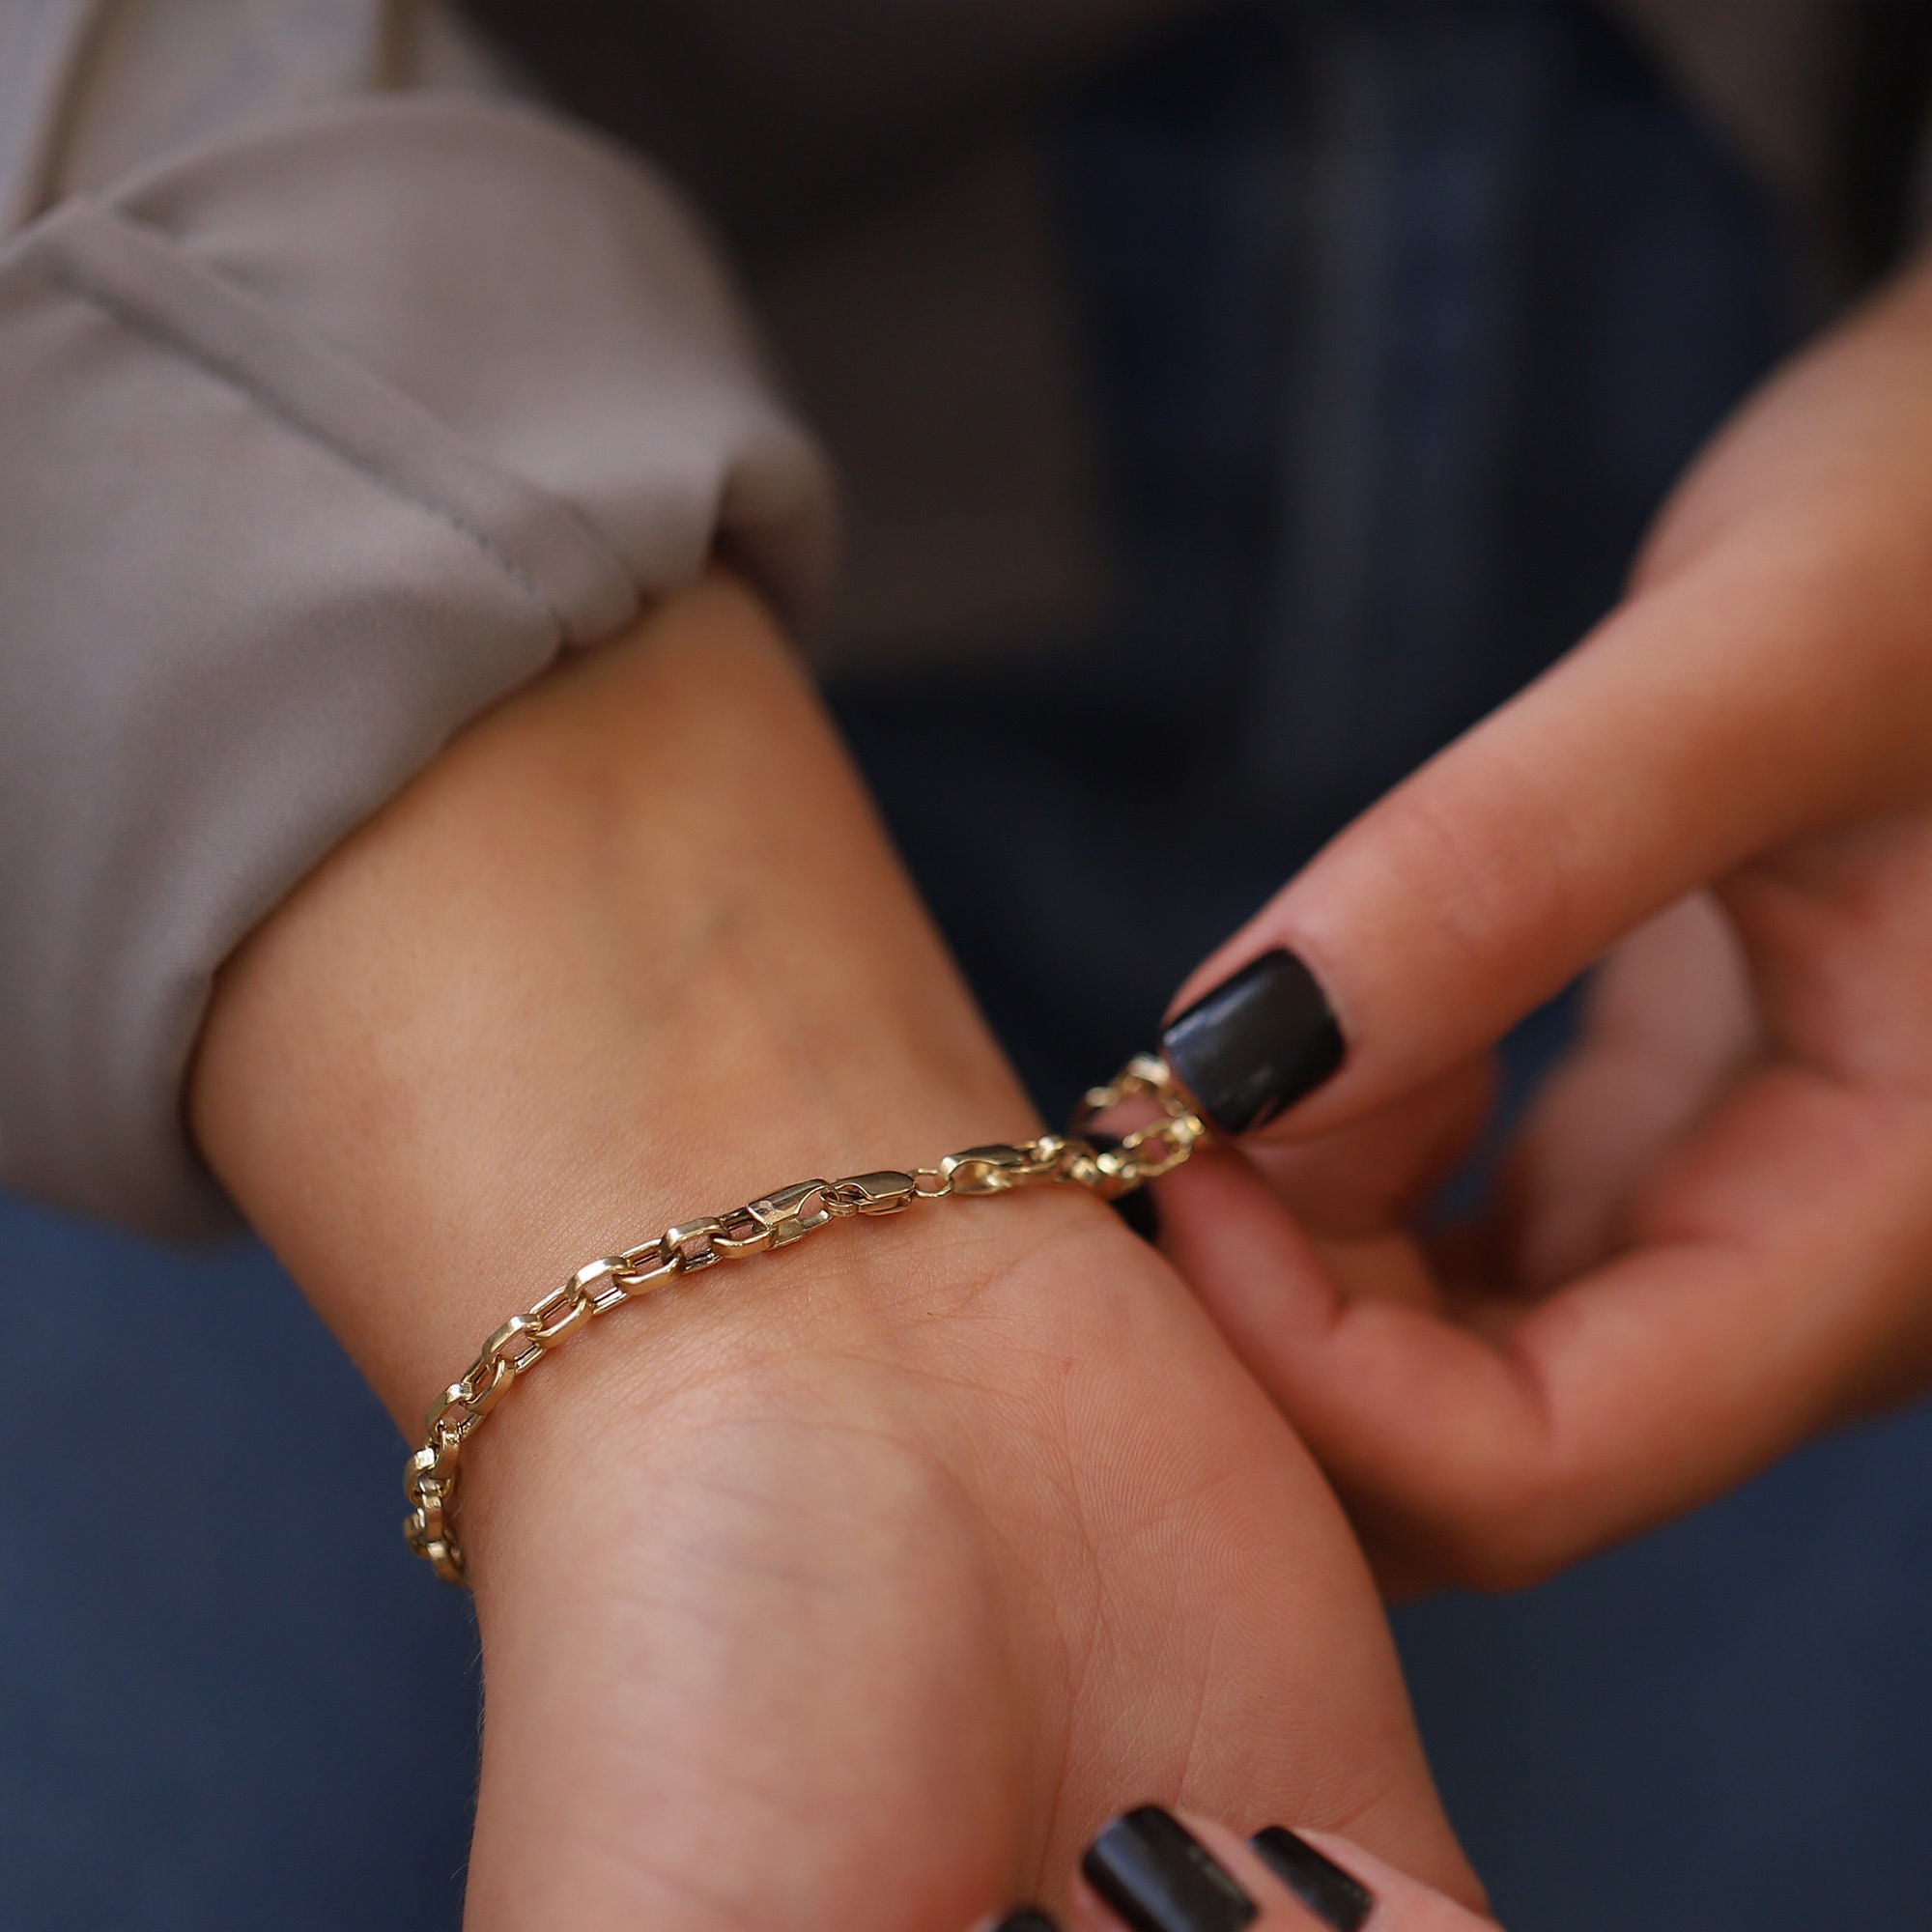 14K Yellow Gold 3.85mm Staple Oval Link Chain Bracelet for Women/men Unisex  Bracelet Fine Jewelry Valentine\'s Gift Friends Gift Monsini - Etsy